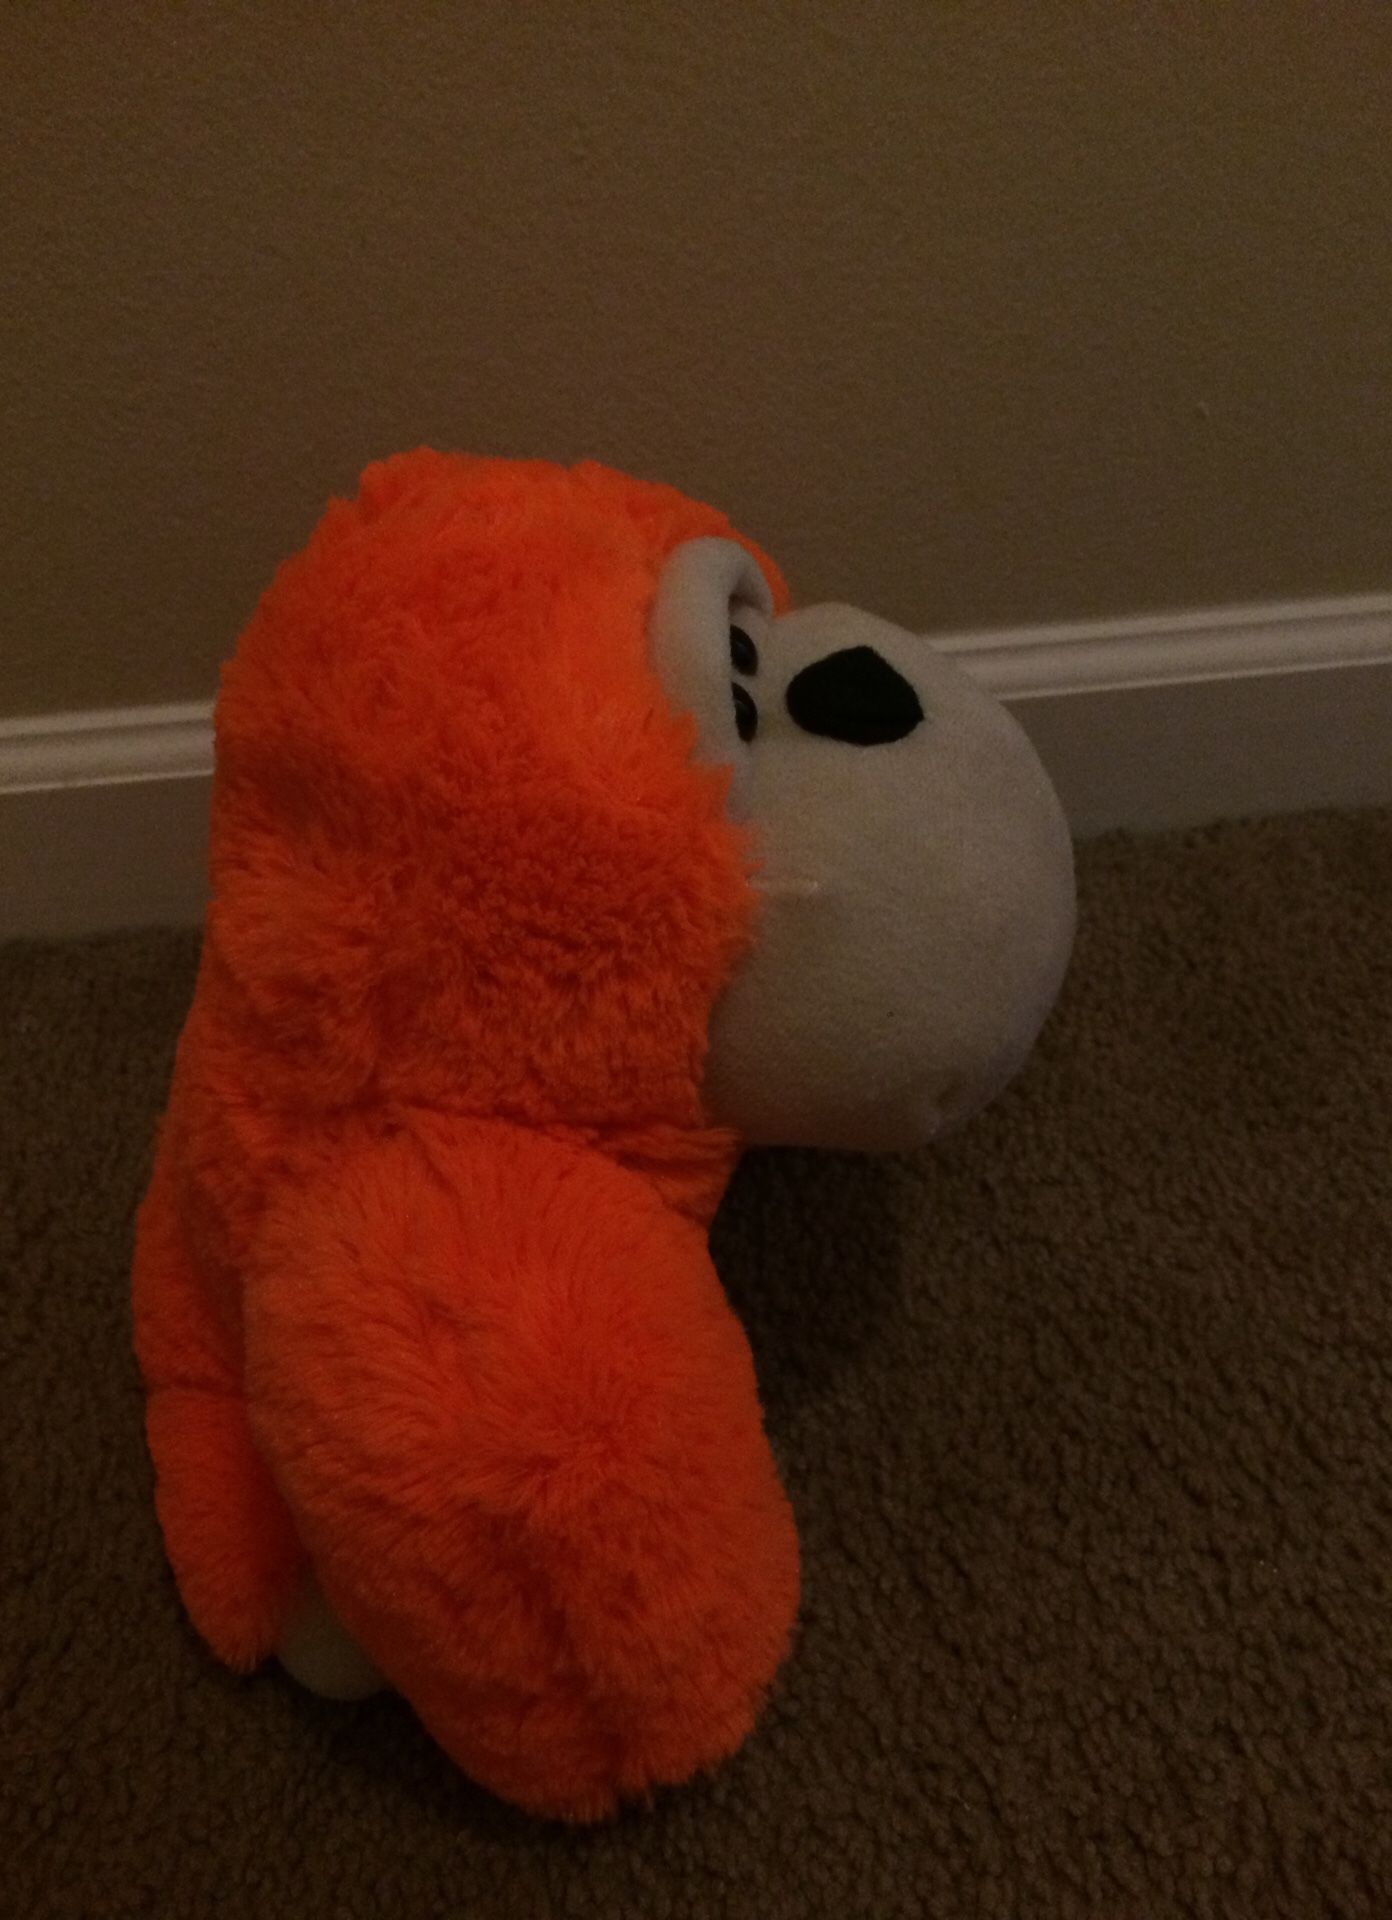 Orange monkey stuffed animal toy